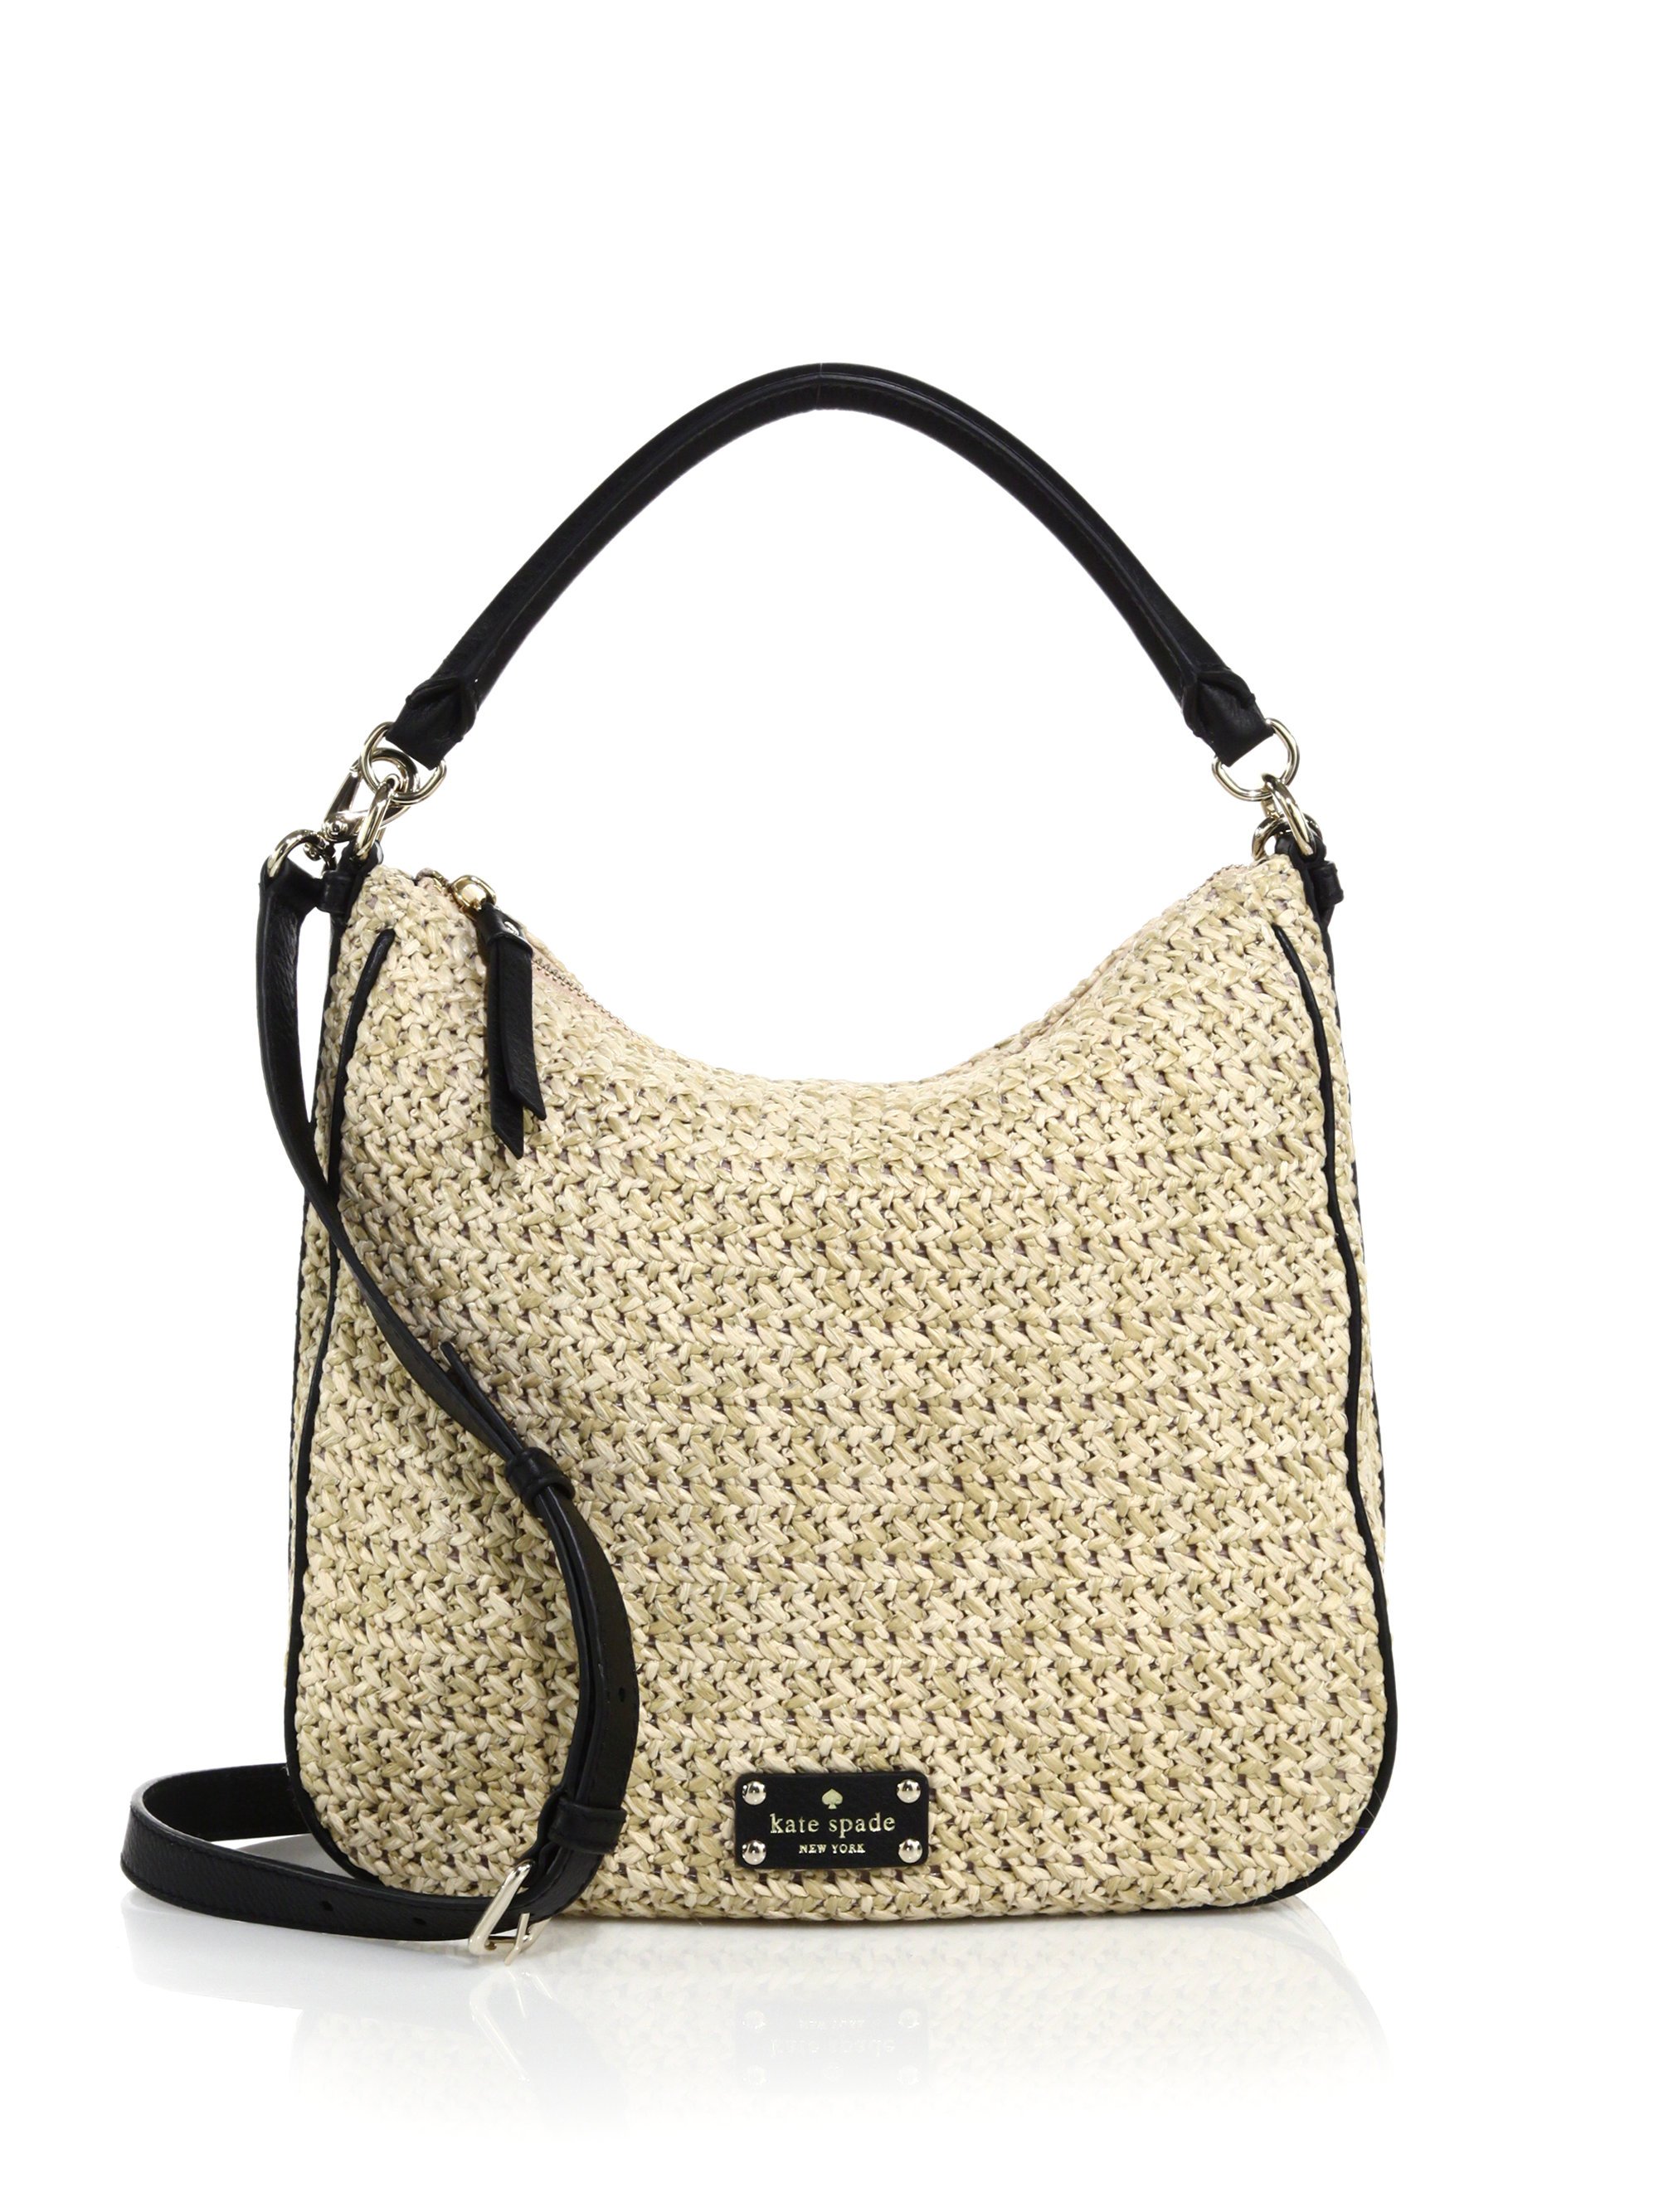 Straw Handbags For Women Uk | semashow.com